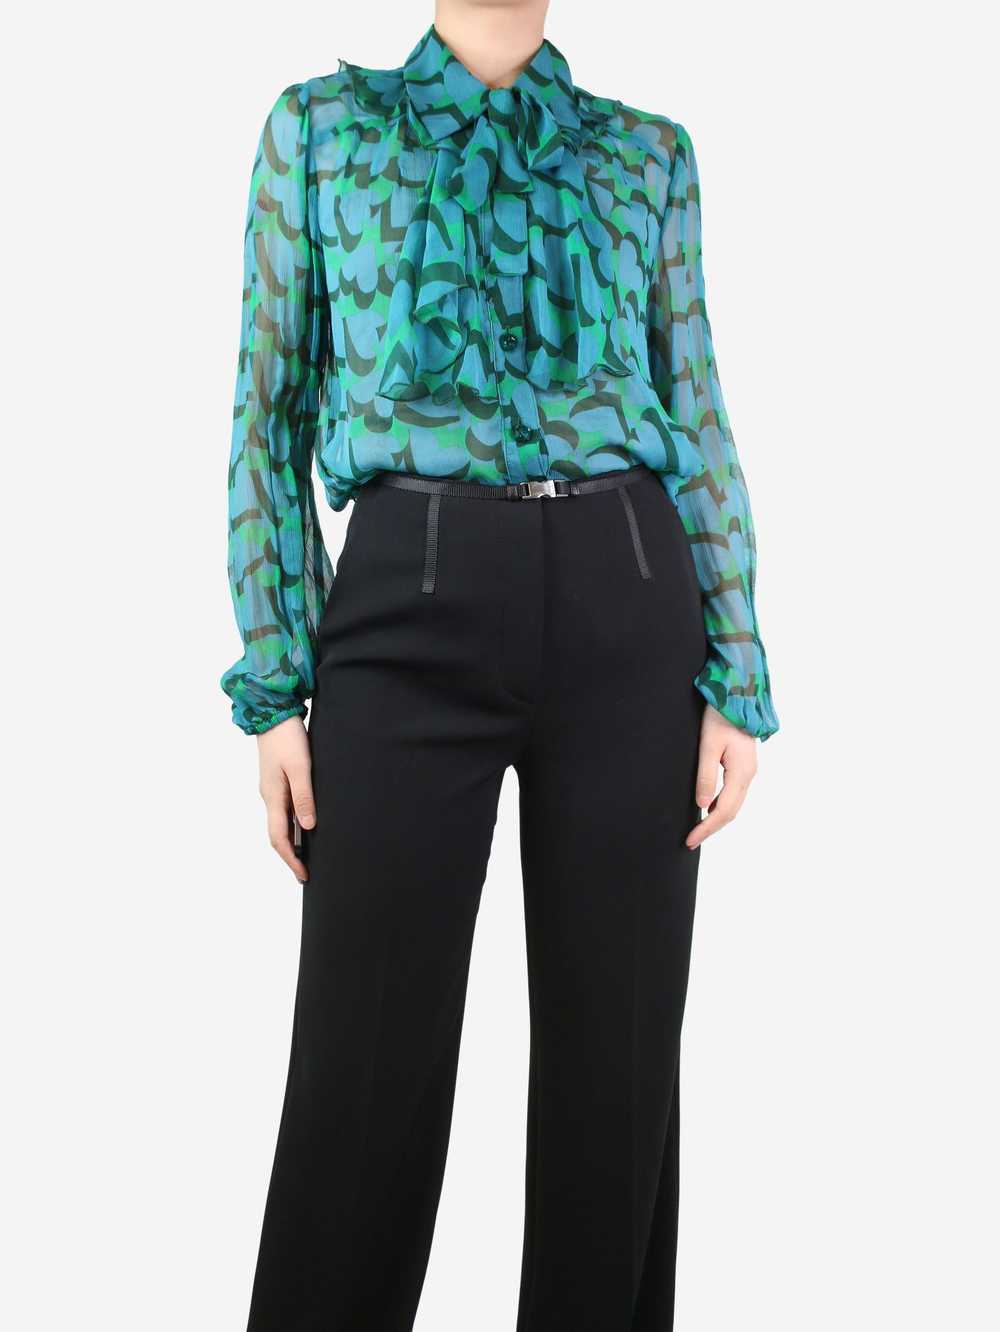 Anna Sui Green sheer ruffled printed blouse - siz… - image 3